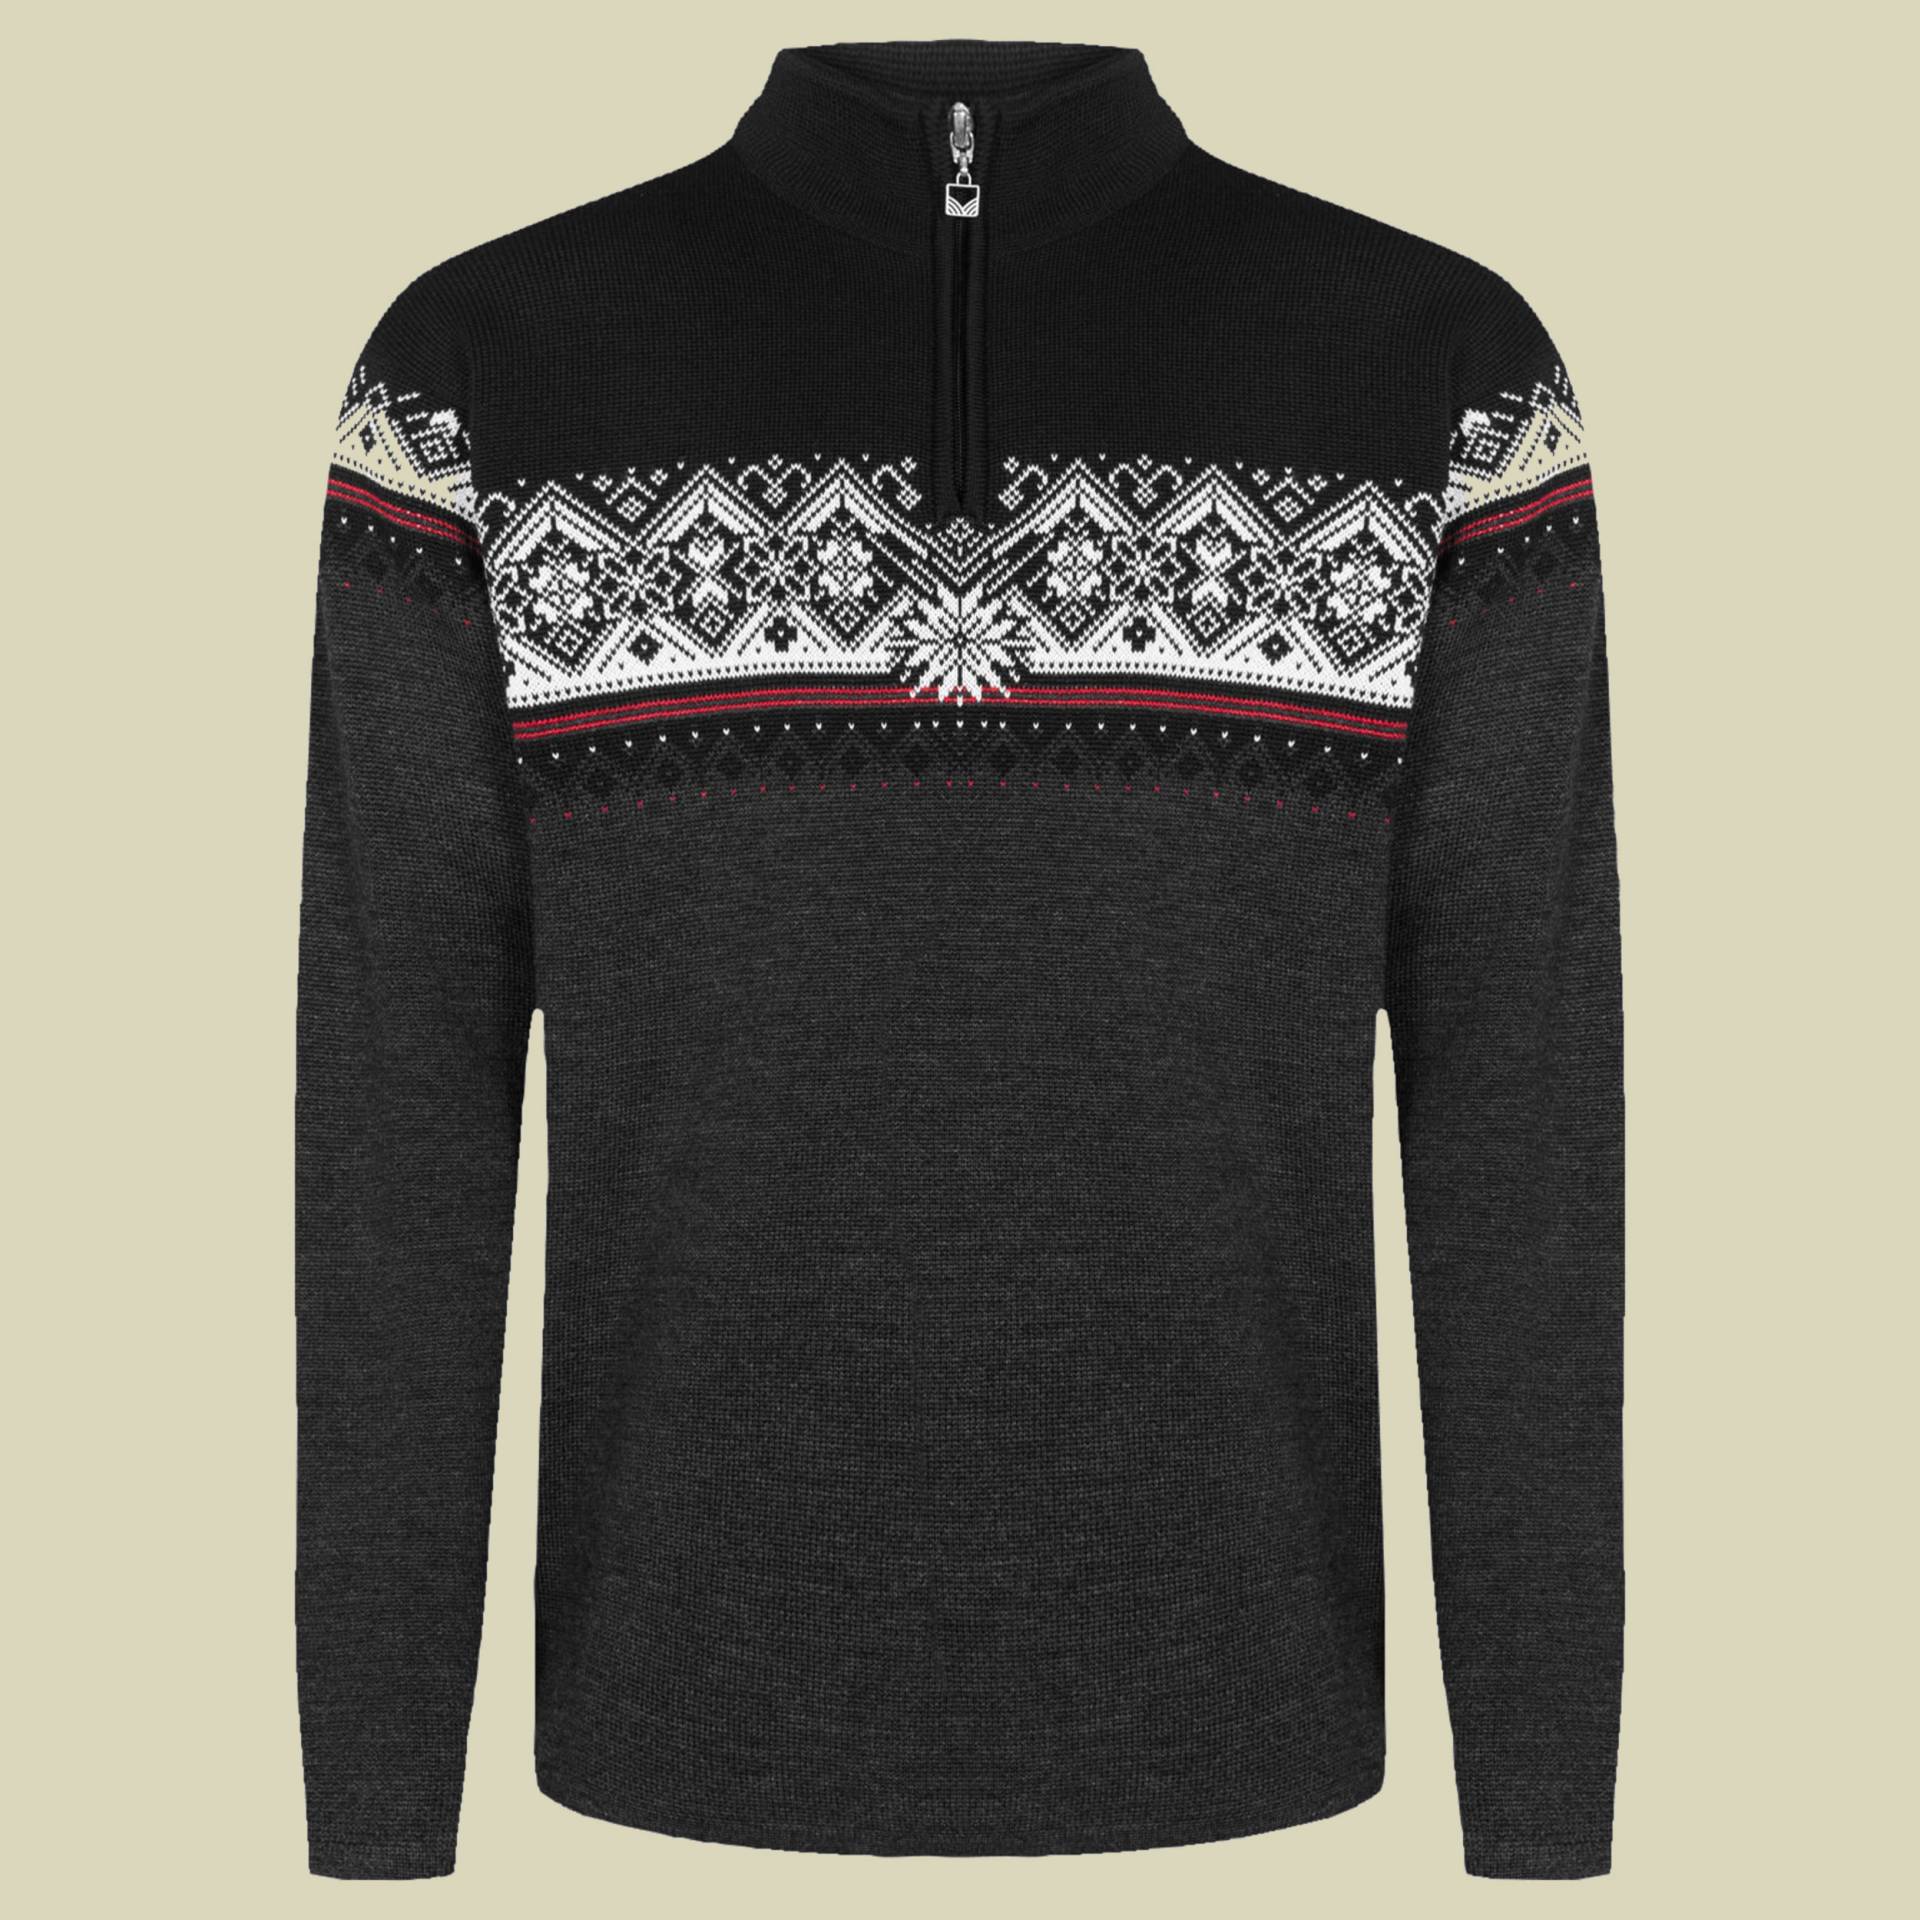 Moritz Sweater Men Größe S Farbe dark charcoal-raspberry-black von Dale of Norway